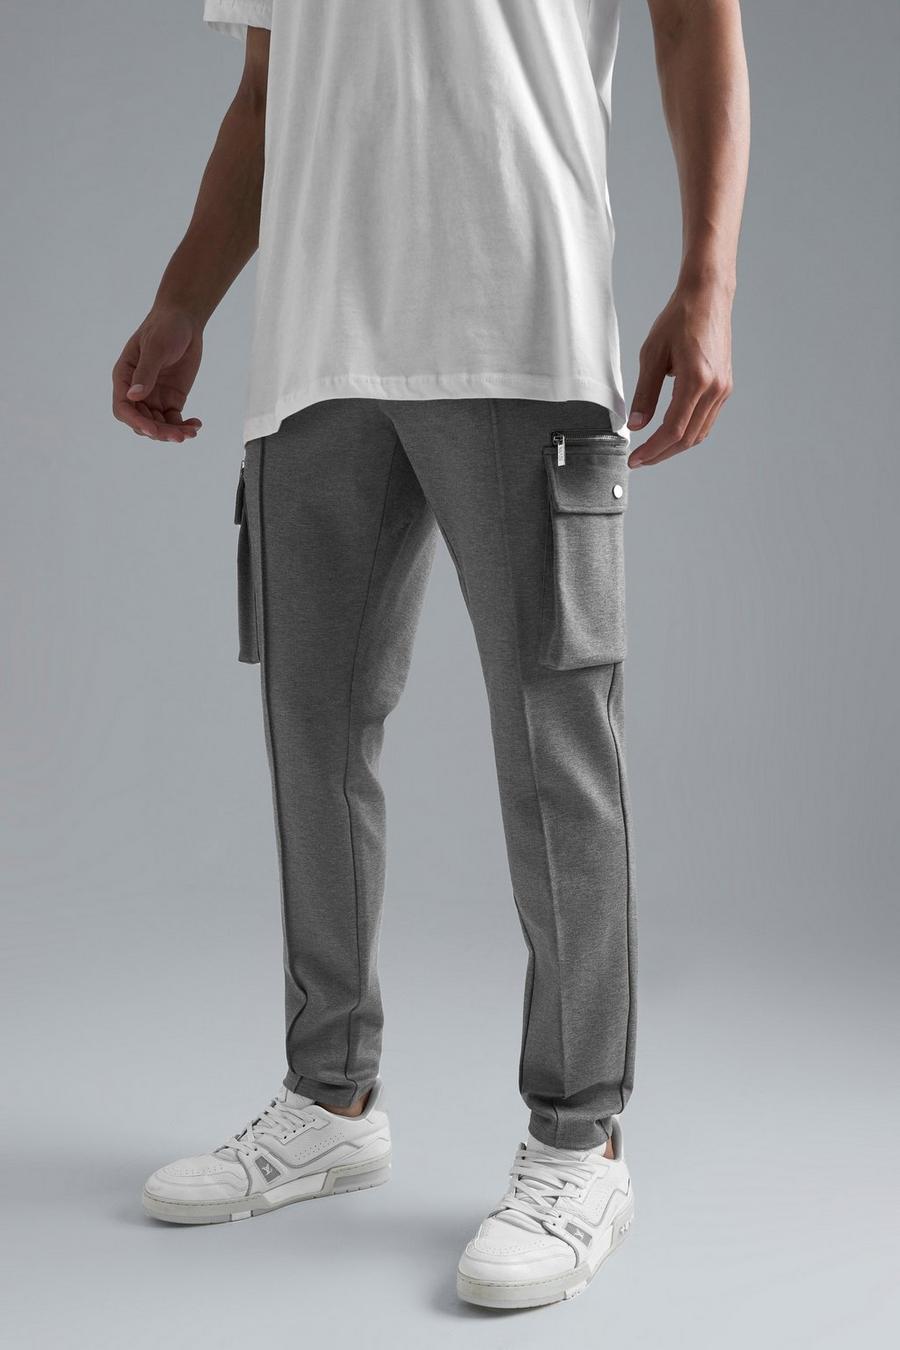 Pantaloni Cargo Tall Slim Fit Luxe con vita elasticizzata, Charcoal grigio